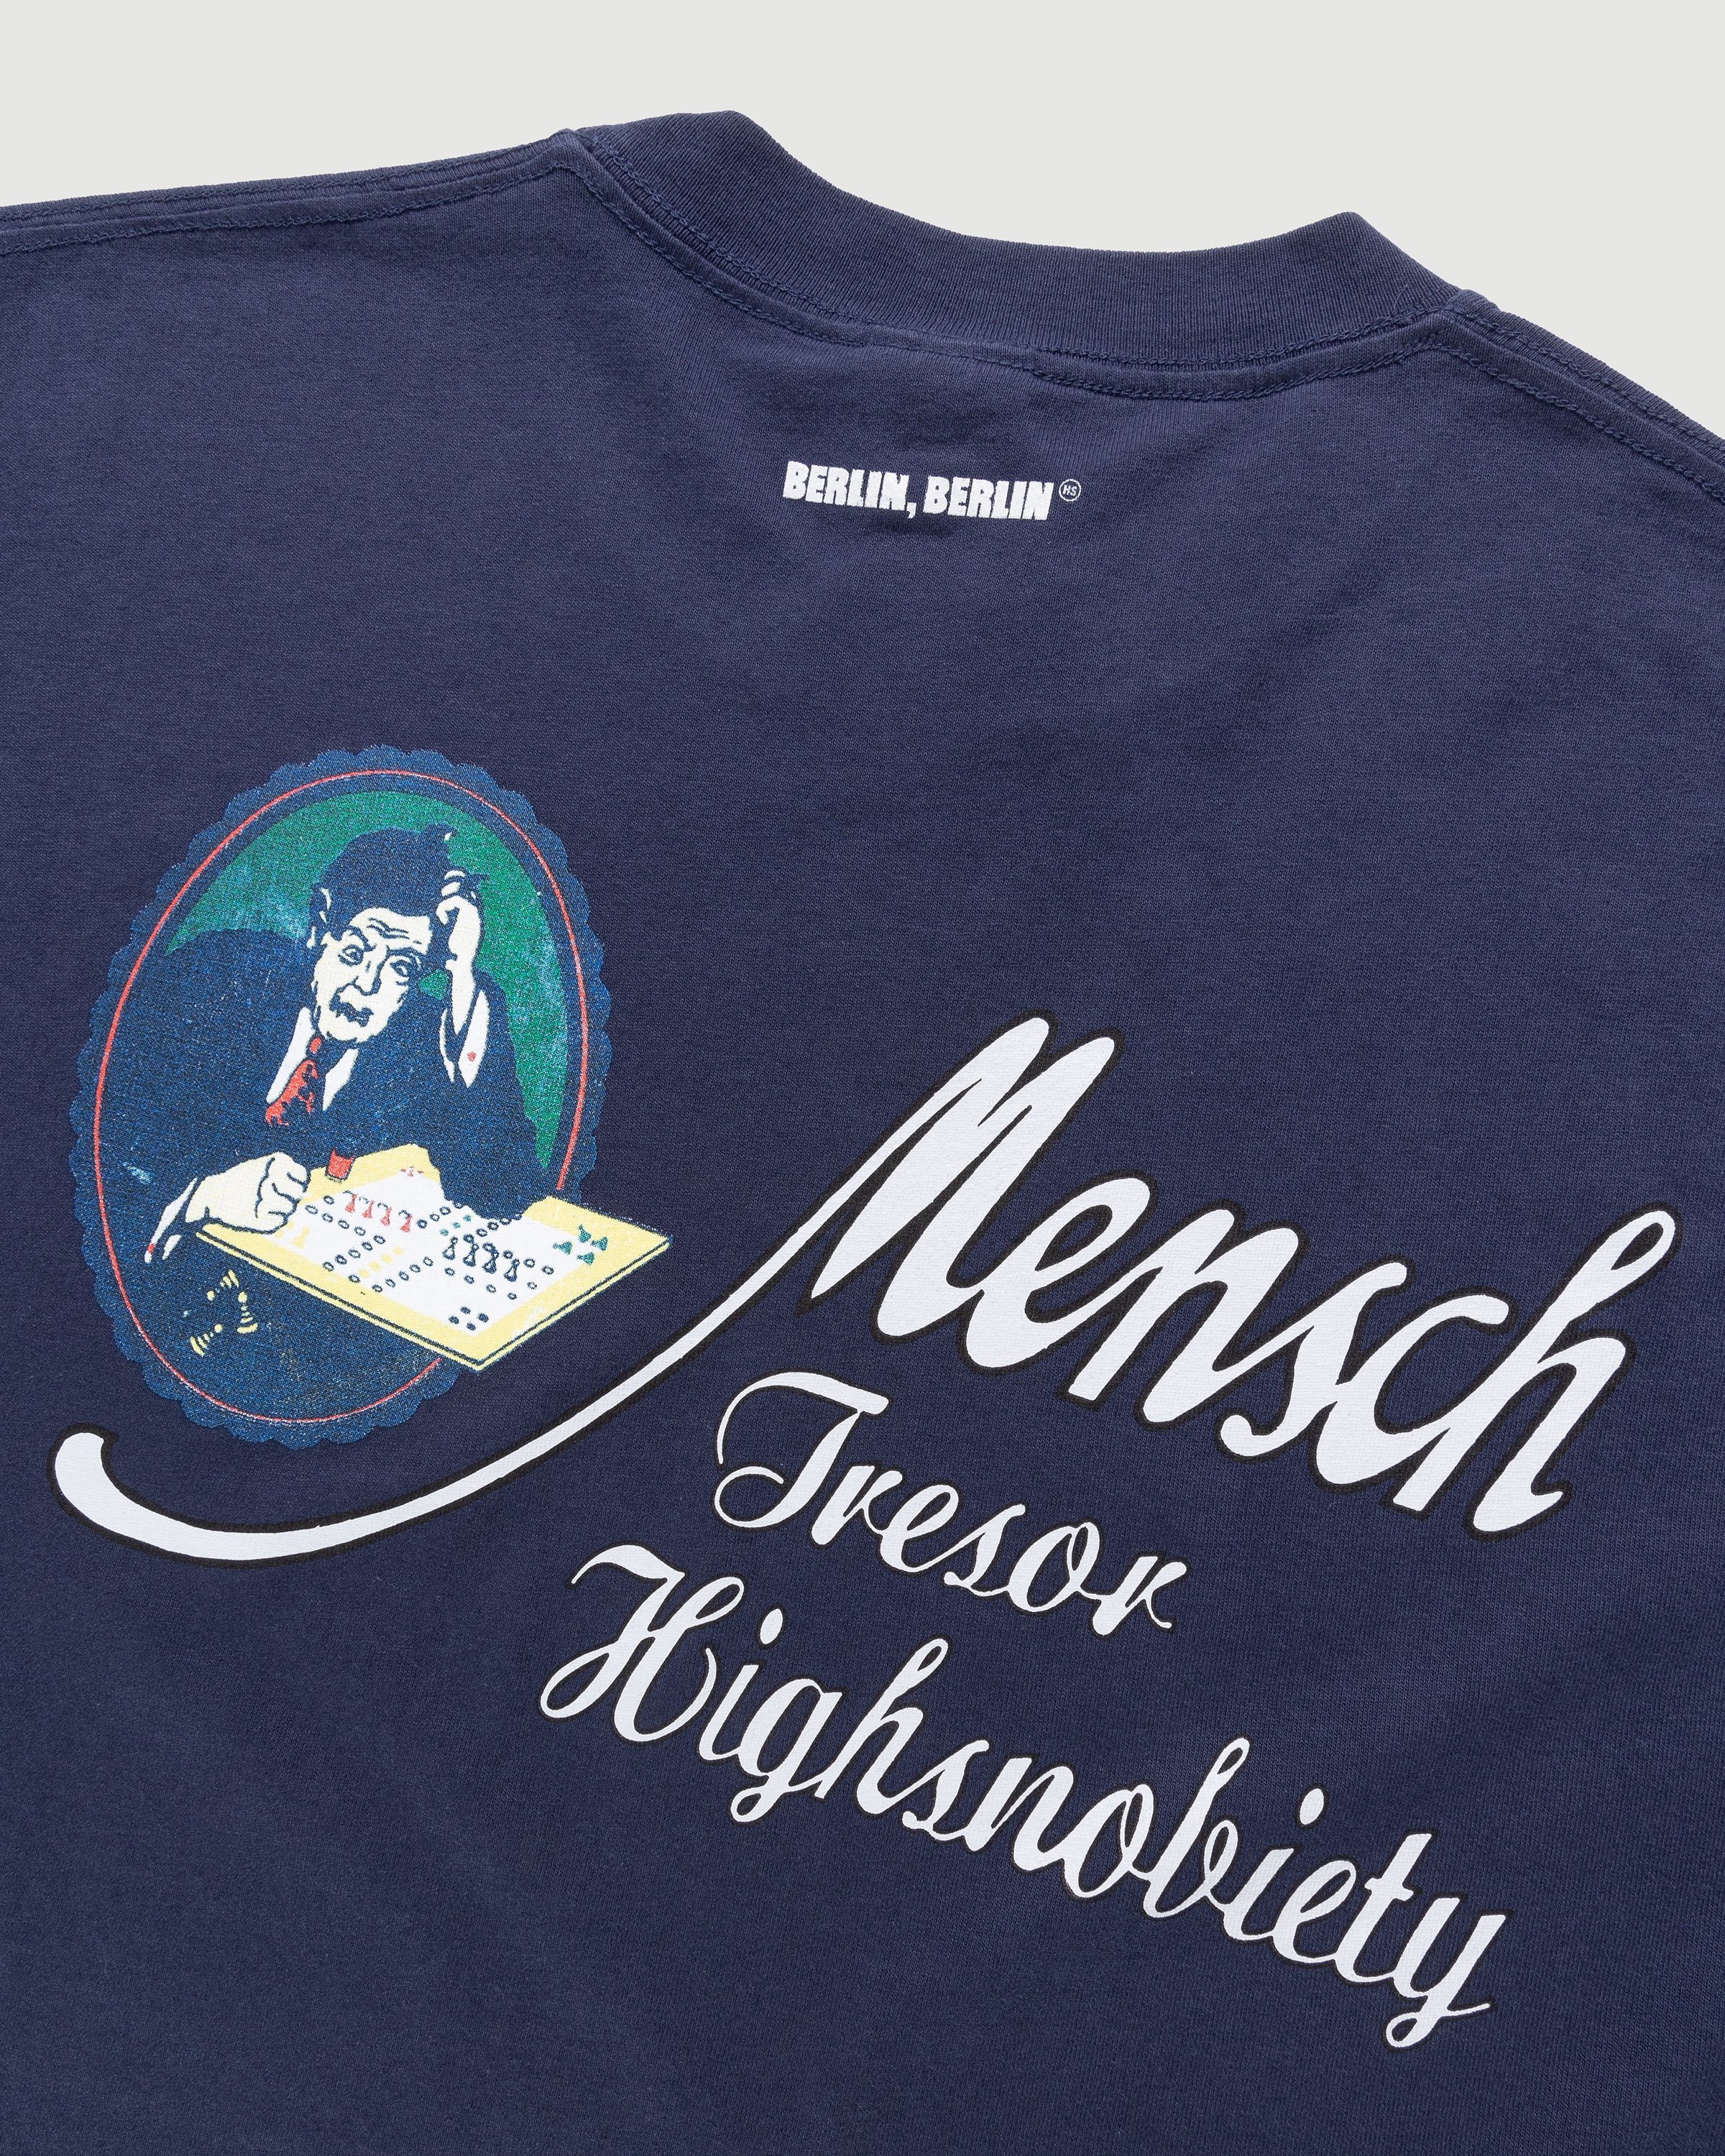 Tresor x Highsnobiety - BERLIN, BERLIN 3 Mensch T-Shirt Navy - Clothing - Navy - Image 4